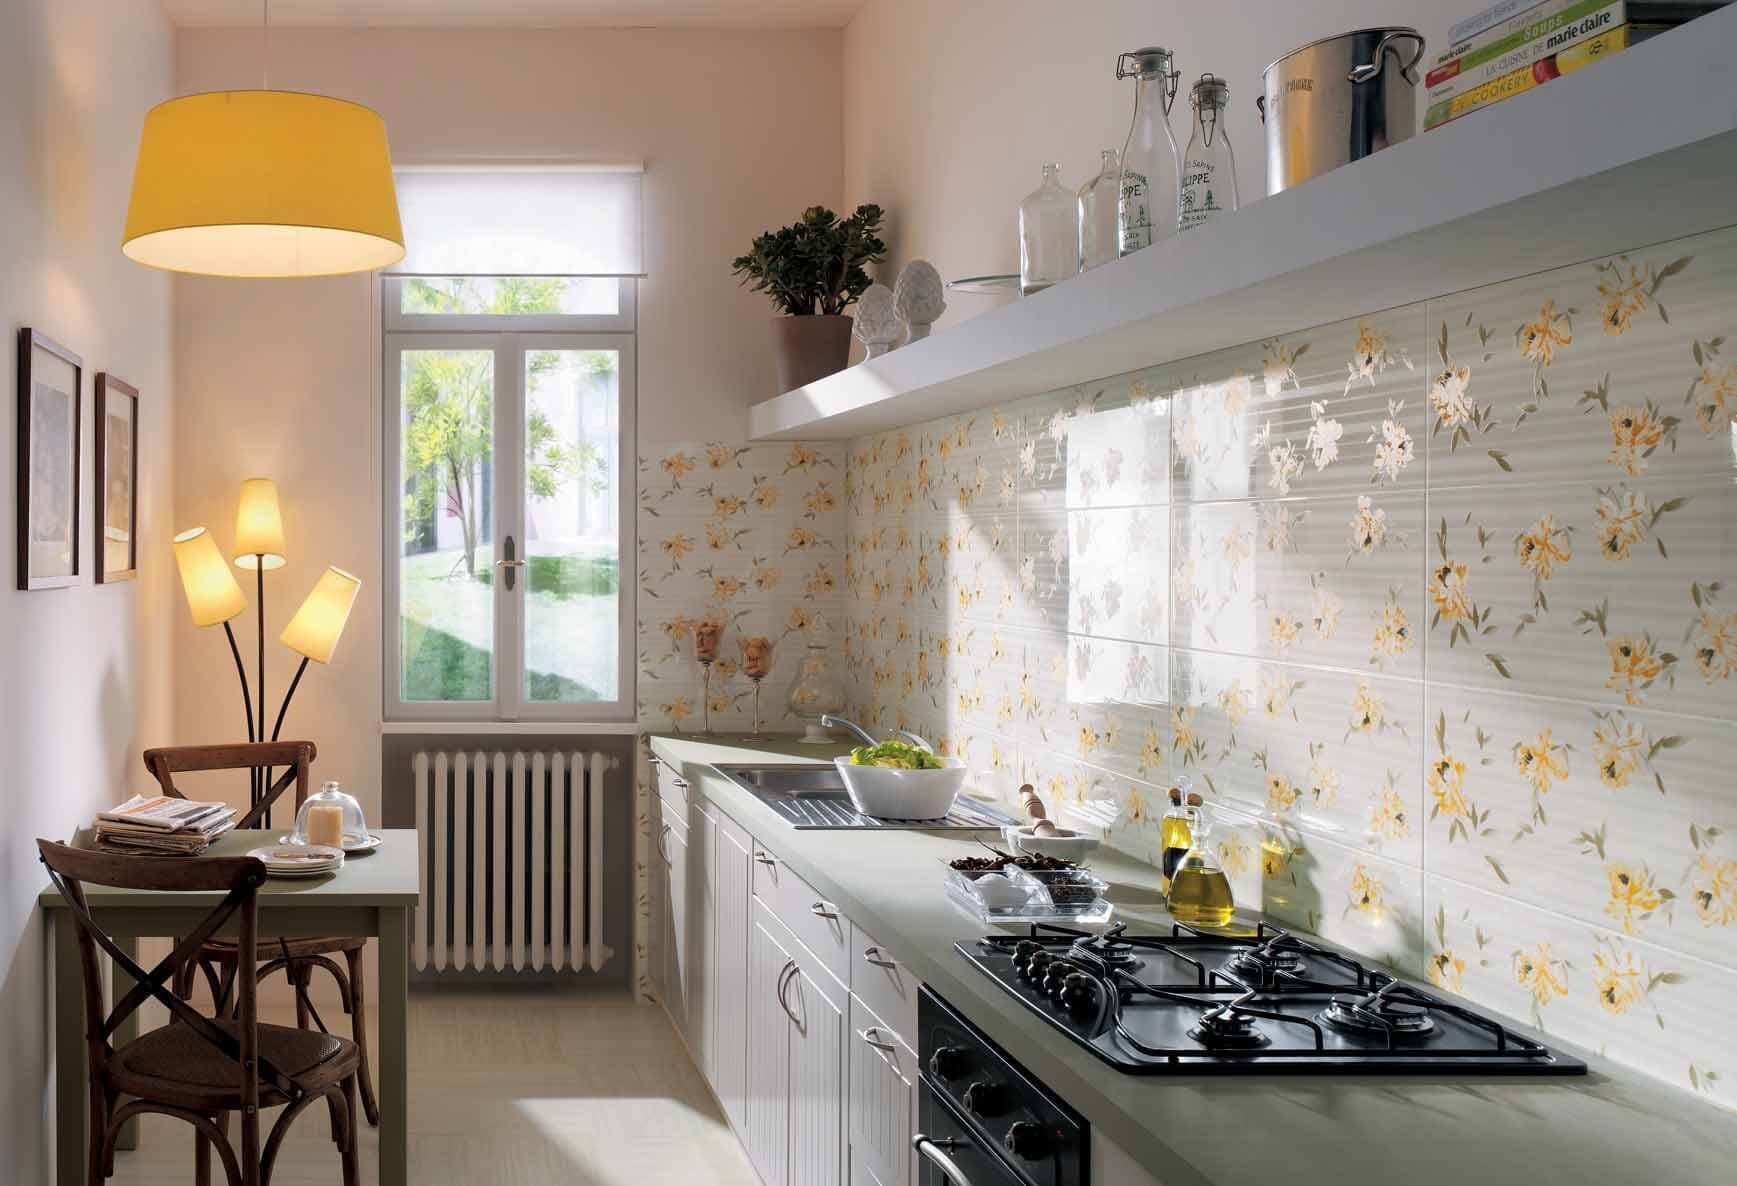 Thiết kế phòng bếp nhỏ theo lối tối giản giúp tiết kiệm diện tích hiệu quả